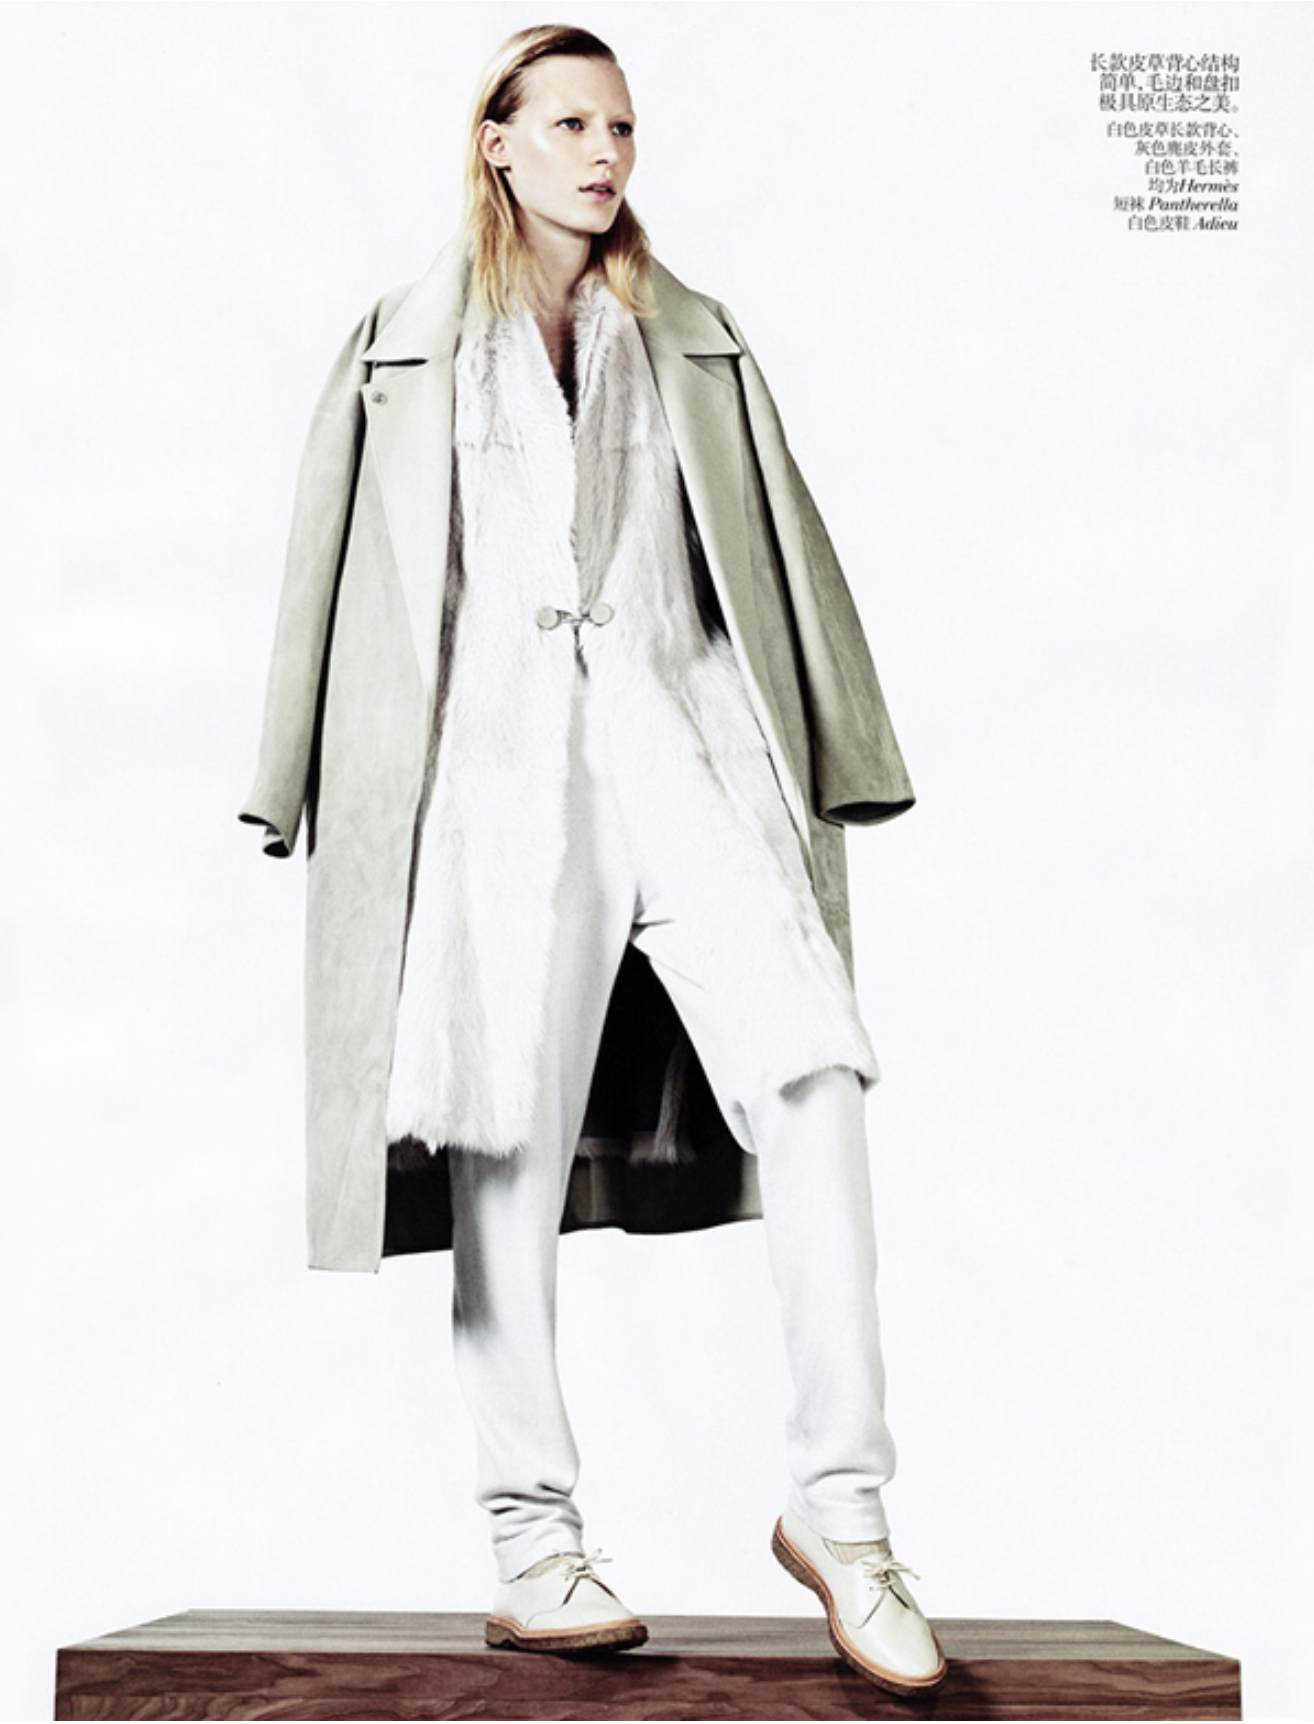 Julia-Nobis-by-Sharif-Hamza-Vogue-China-November-2014-11.png